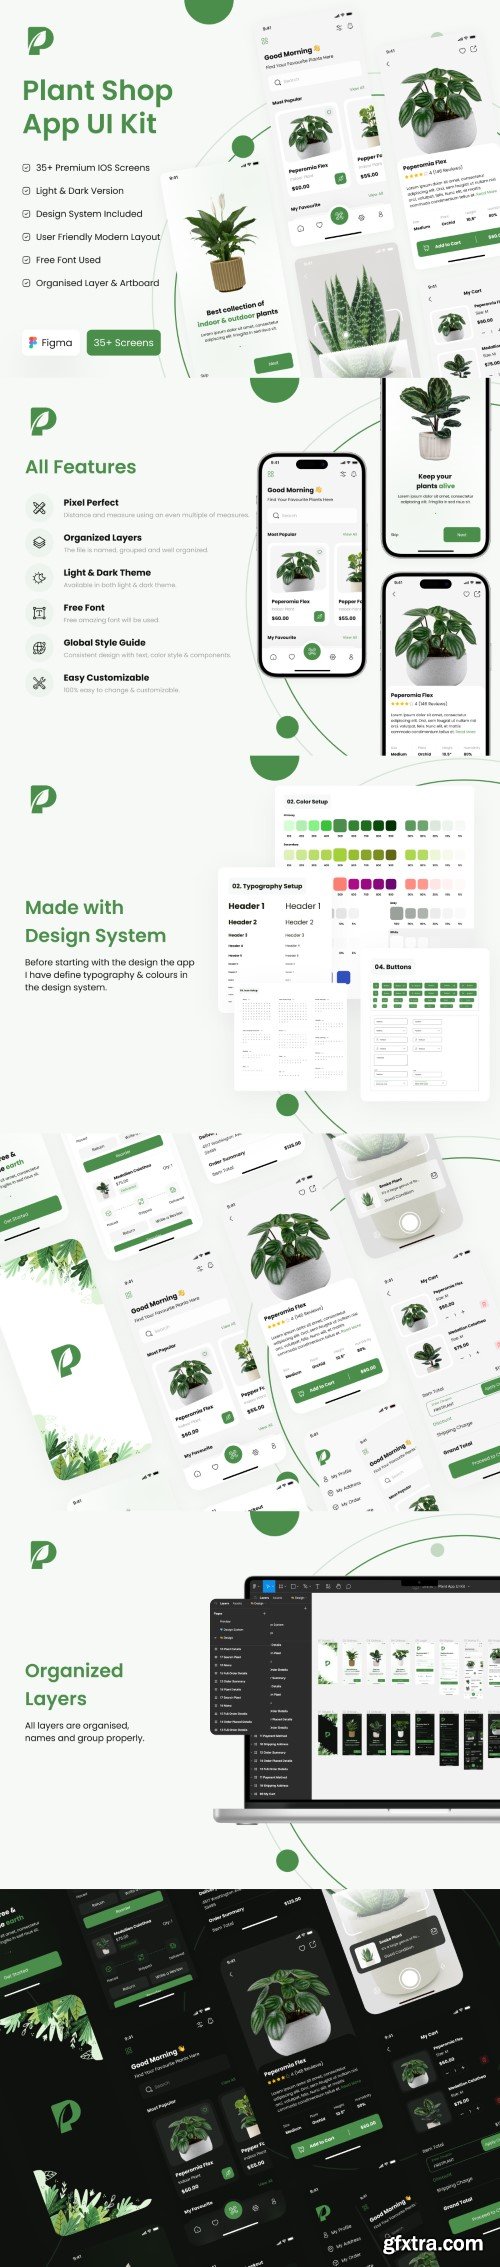 UI8 - Plant Shop App UI Kit